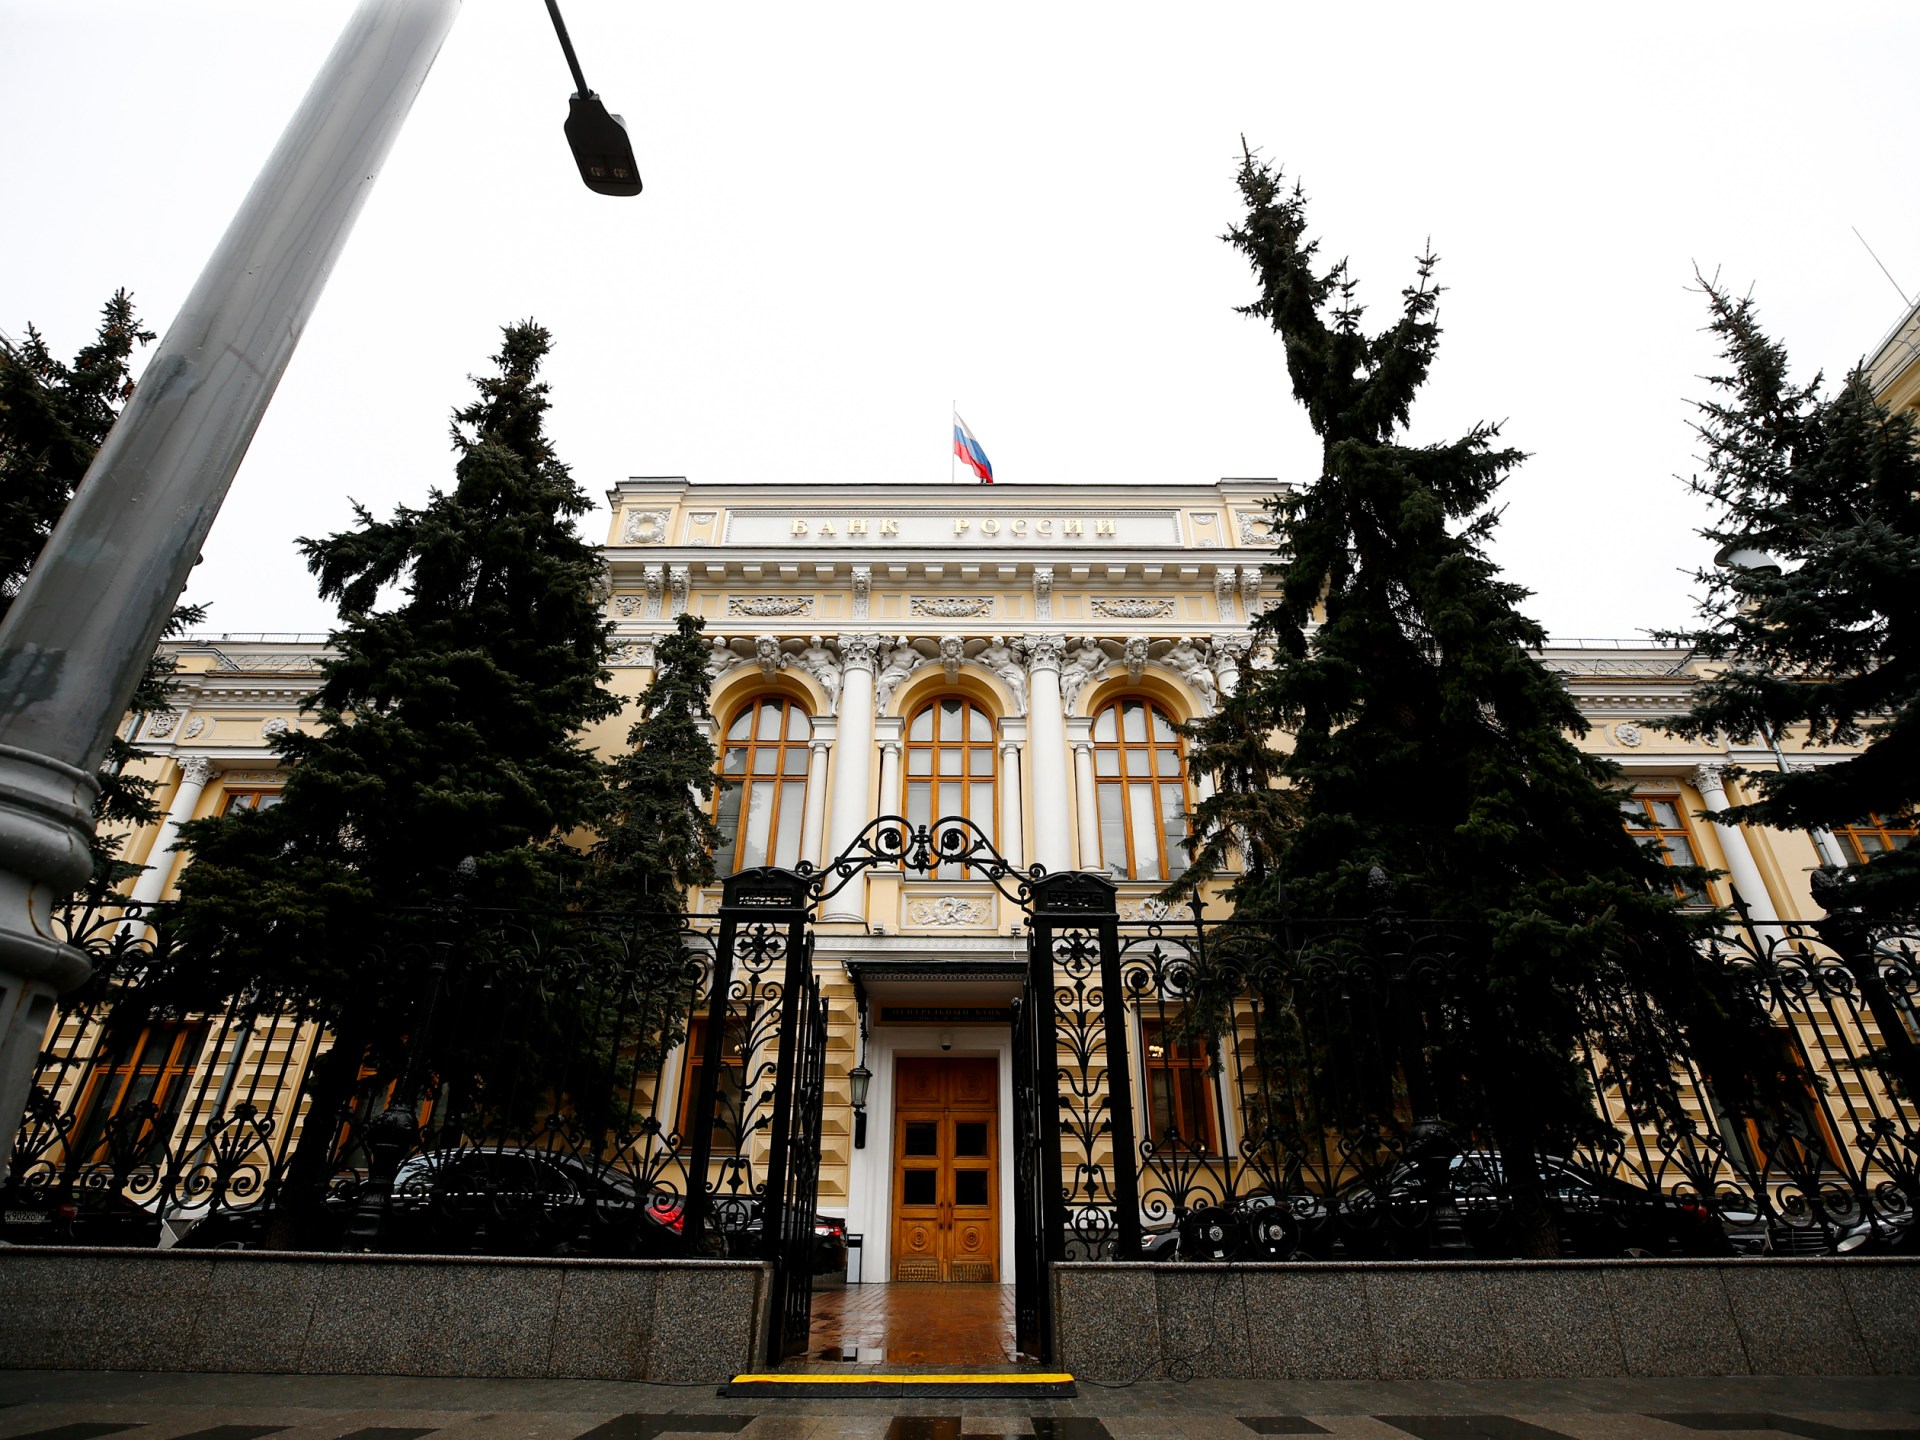 روسيا ترفع أسعار الفائدة لكبح التضخم وانخفاض الروبل | اقتصاد – البوكس نيوز